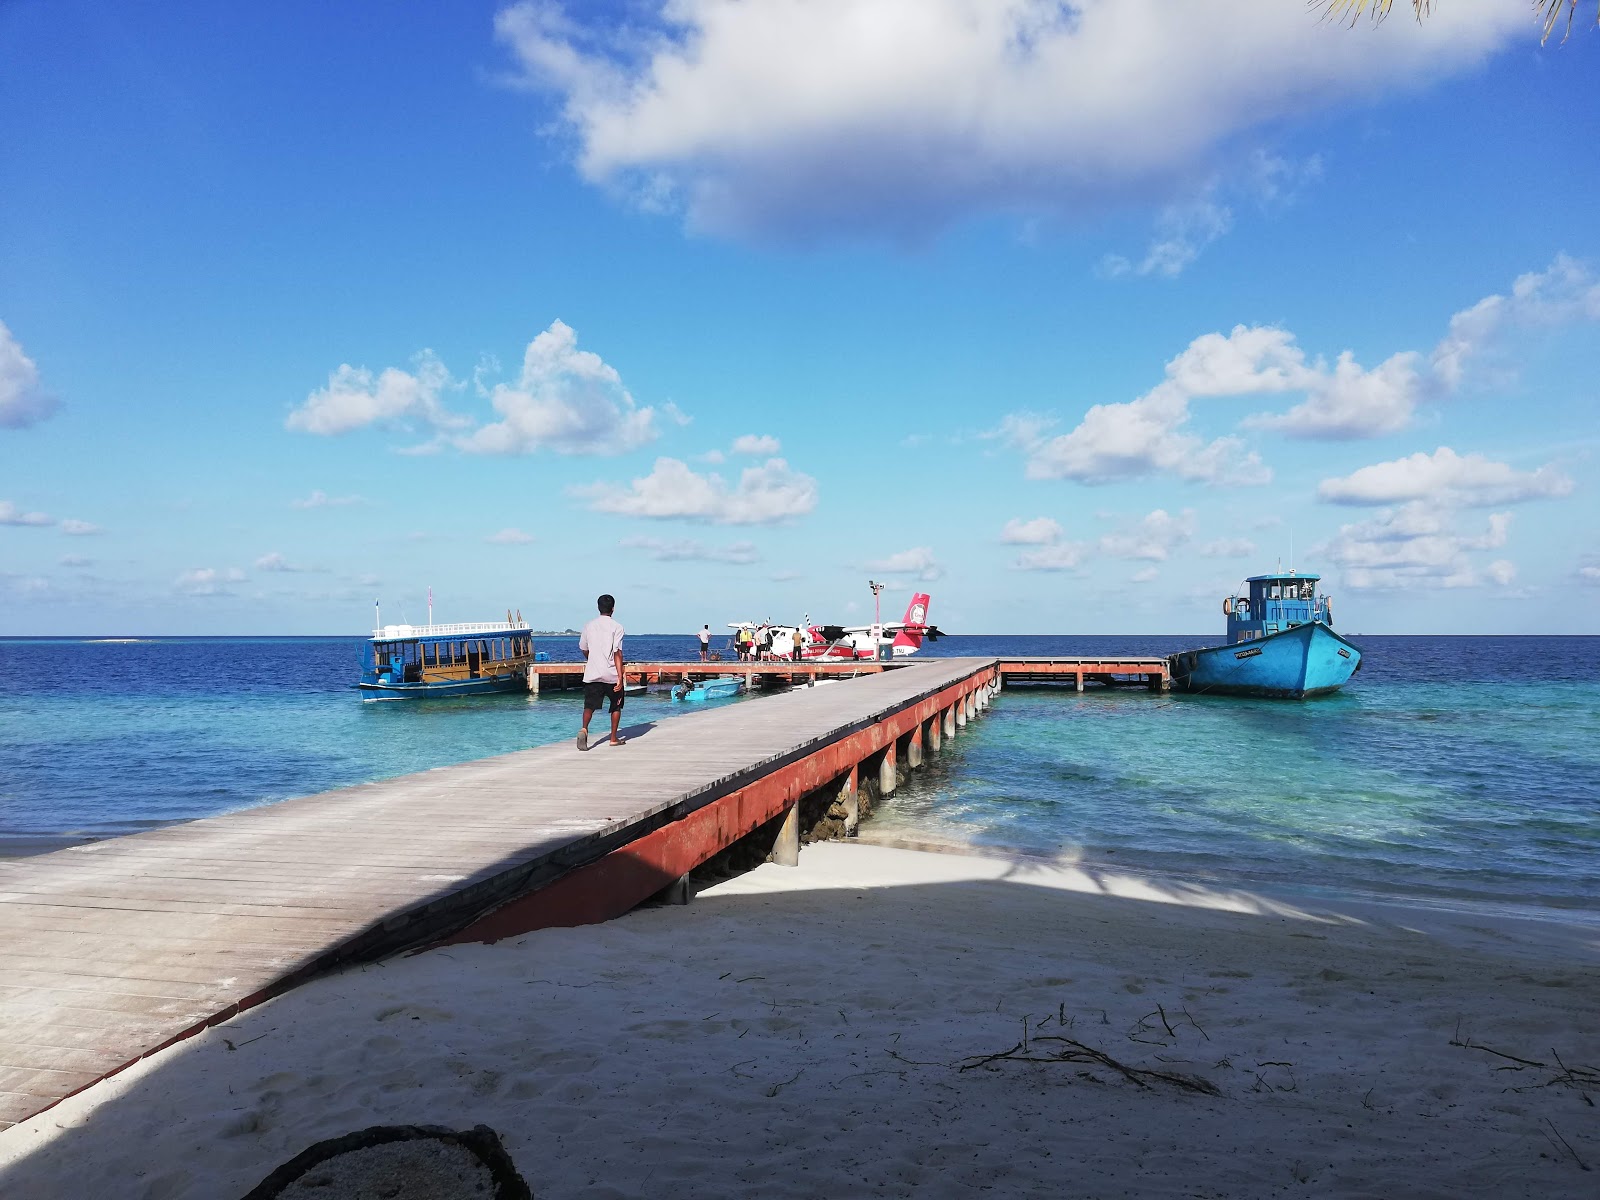 Zdjęcie Velidhu Island Resort - popularne miejsce wśród znawców relaksu